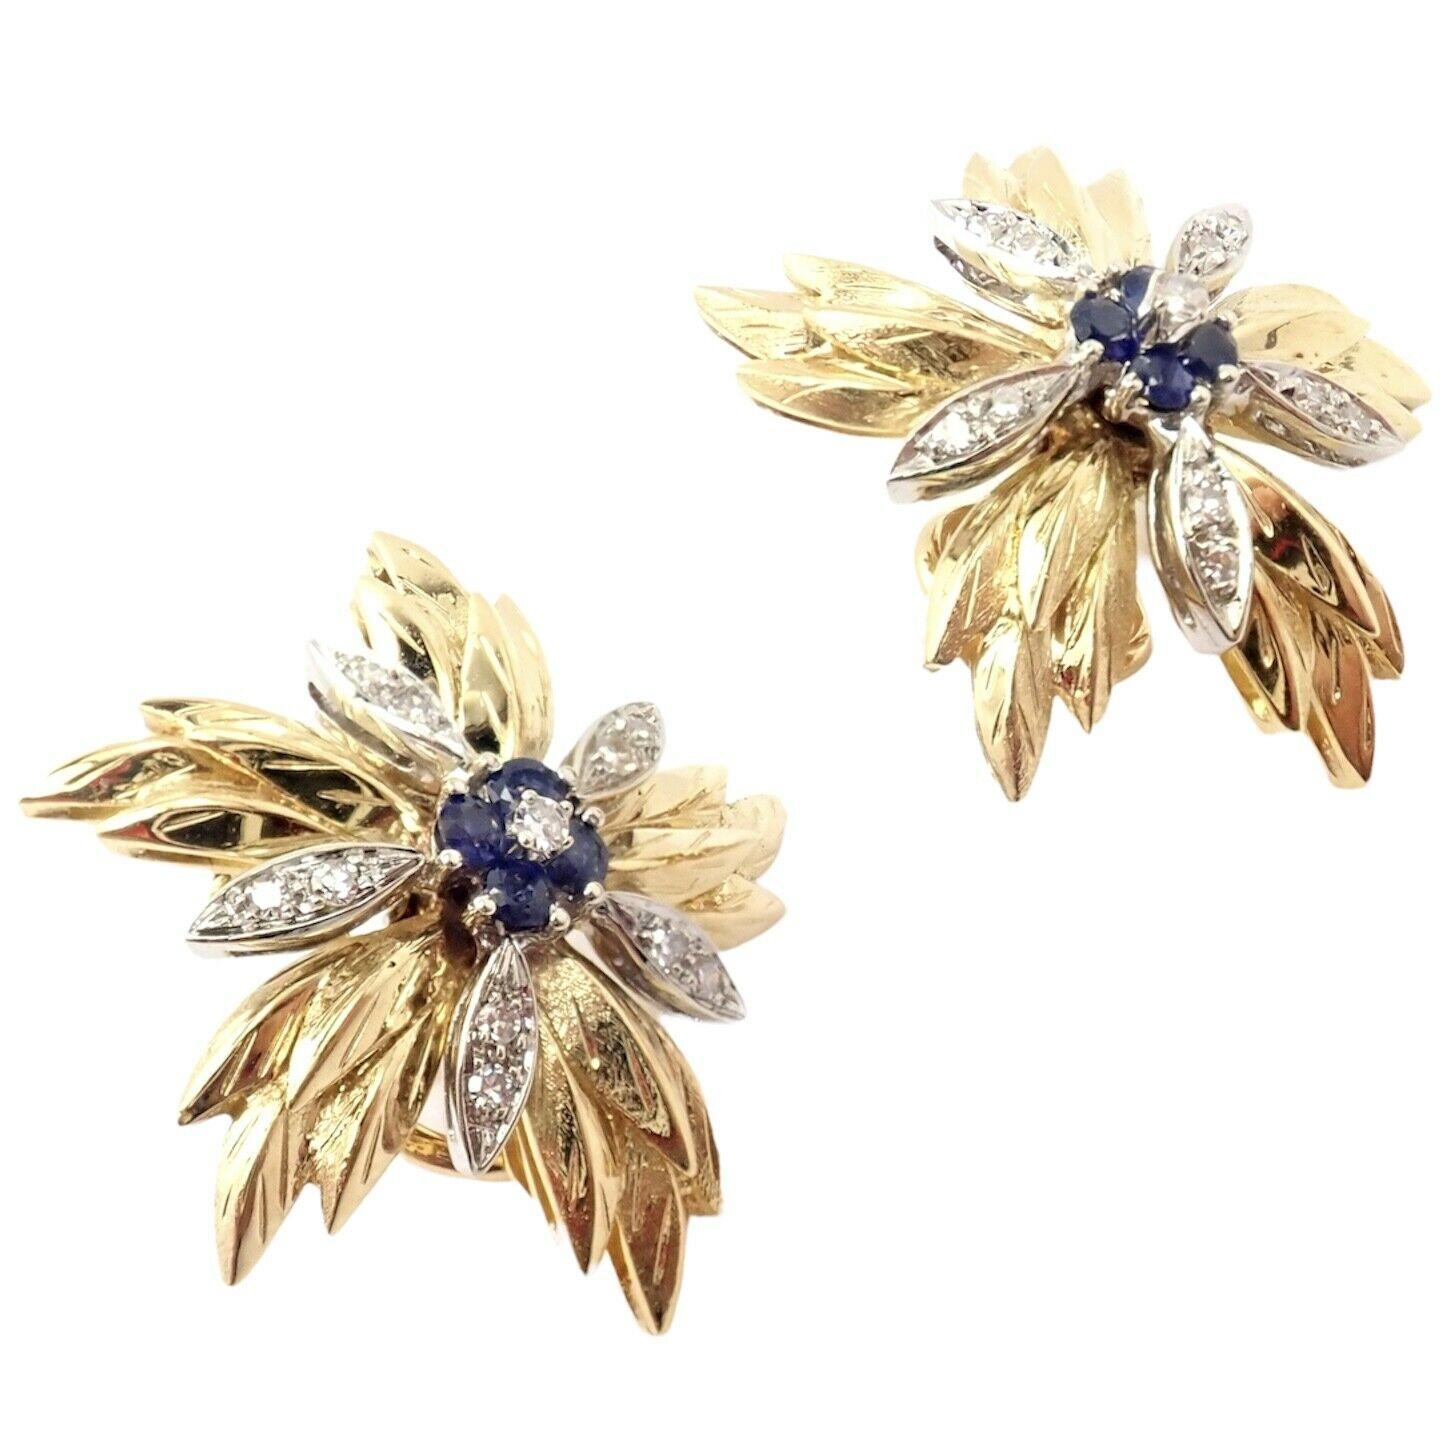 18k Gelbgold Vintage Diamant und Saphir Blume Ohrringe von Tiffany & Co. 
Mit 22 runden Diamanten im Brillantschliff VS1 Klarheit, G Farbe Gesamtgewicht ca. .22ct
8 Saphirsteine à 2mm
Diese Ohrringe sind für gepiercte Ohren geeignet.
Einzelheiten: